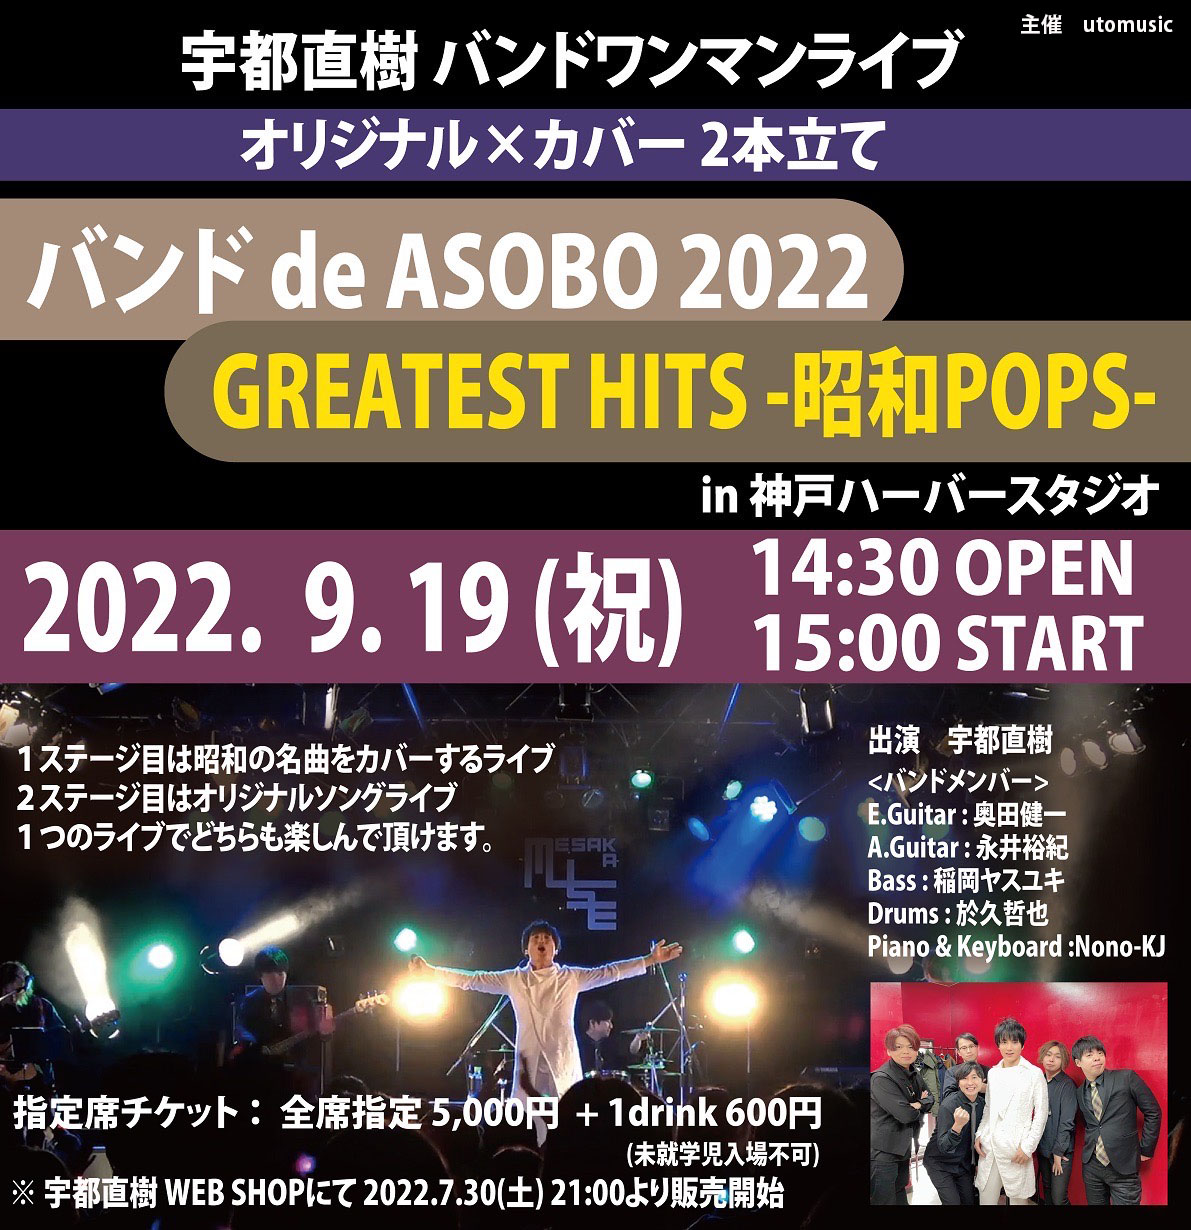 宇都直樹フルバンドワンマンライブ 『バンド de ASOBO 2022 × GREATEST HITS -昭和POPS- 』